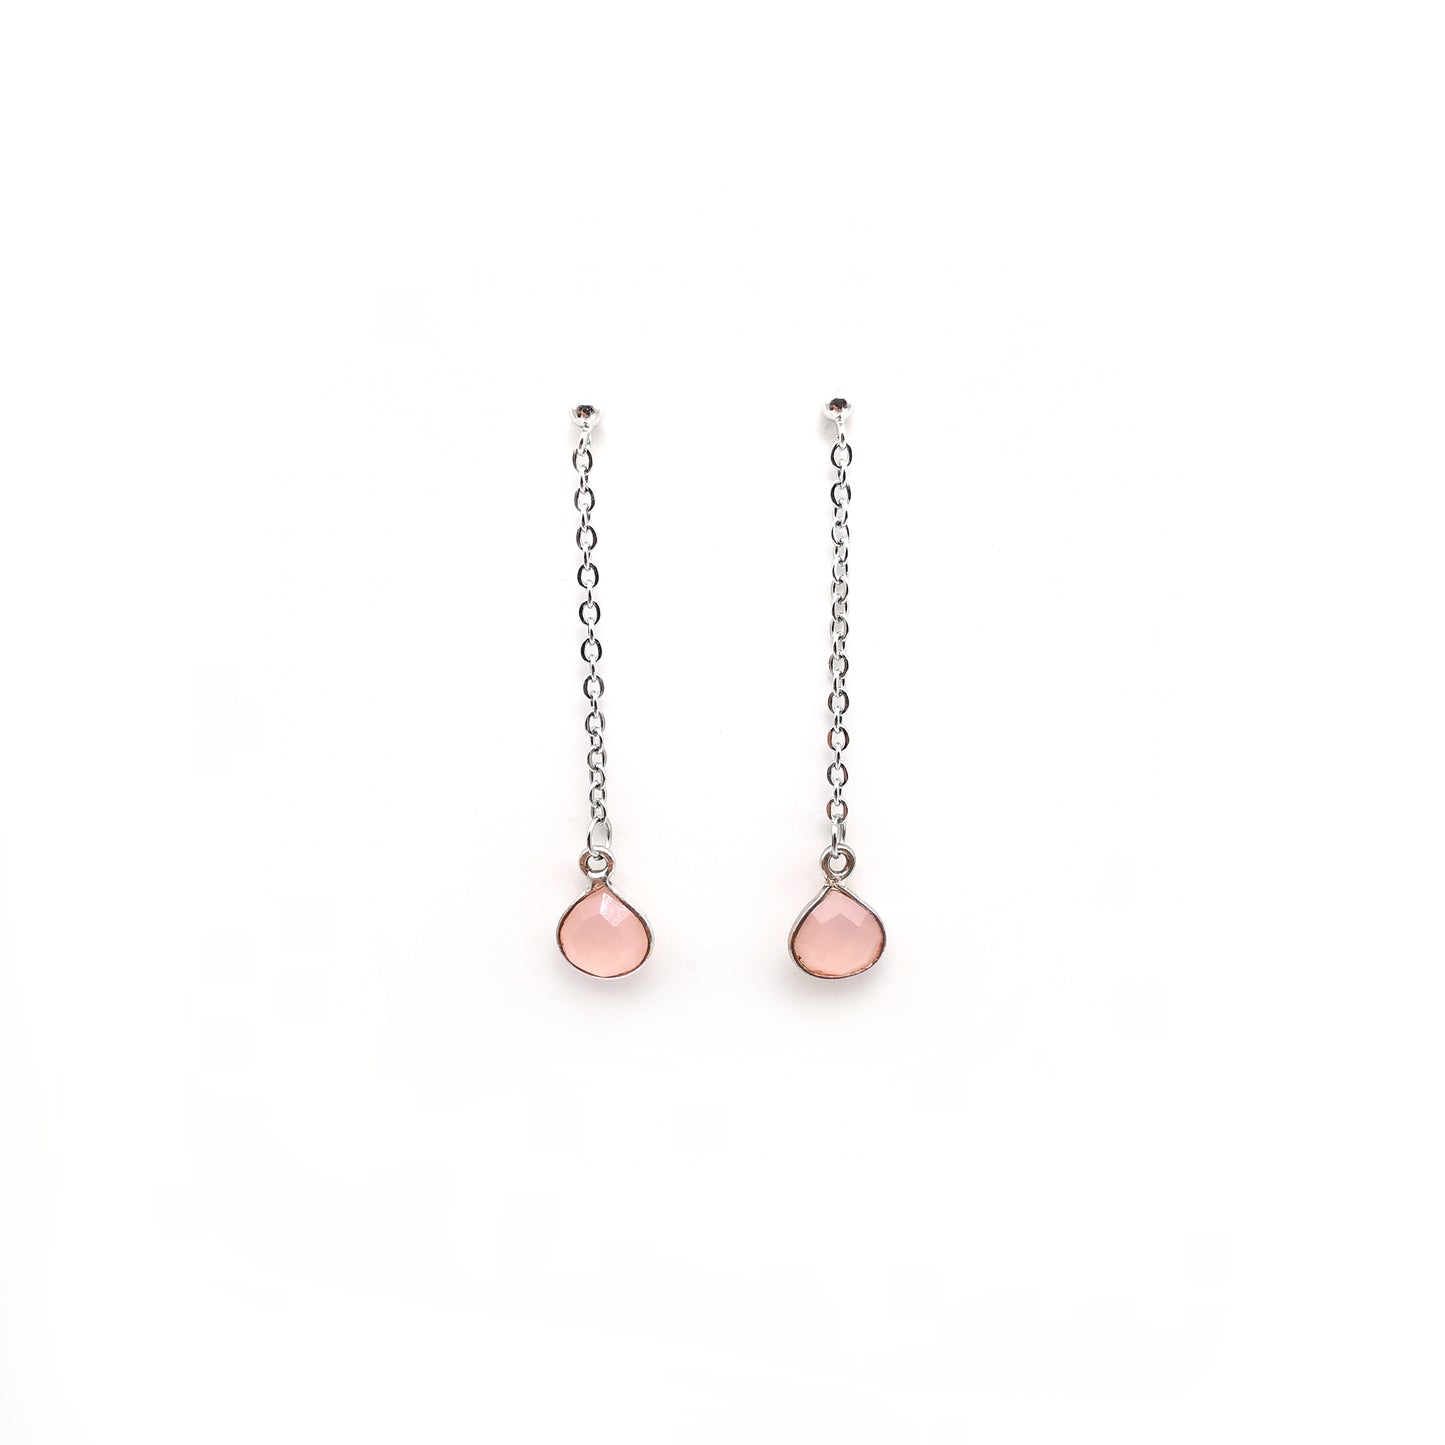 Pear Bezel Set Pink Chalcedony Long Earrings in Sterling Silver